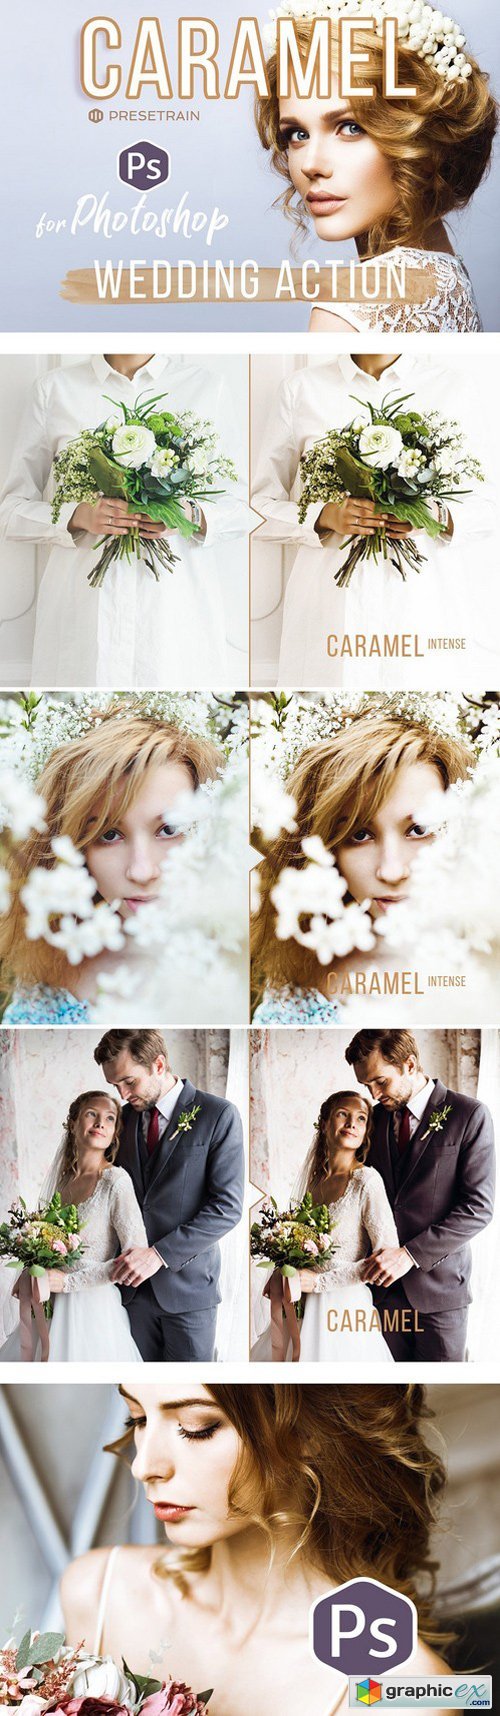 Caramel Wedding Photoshop Action